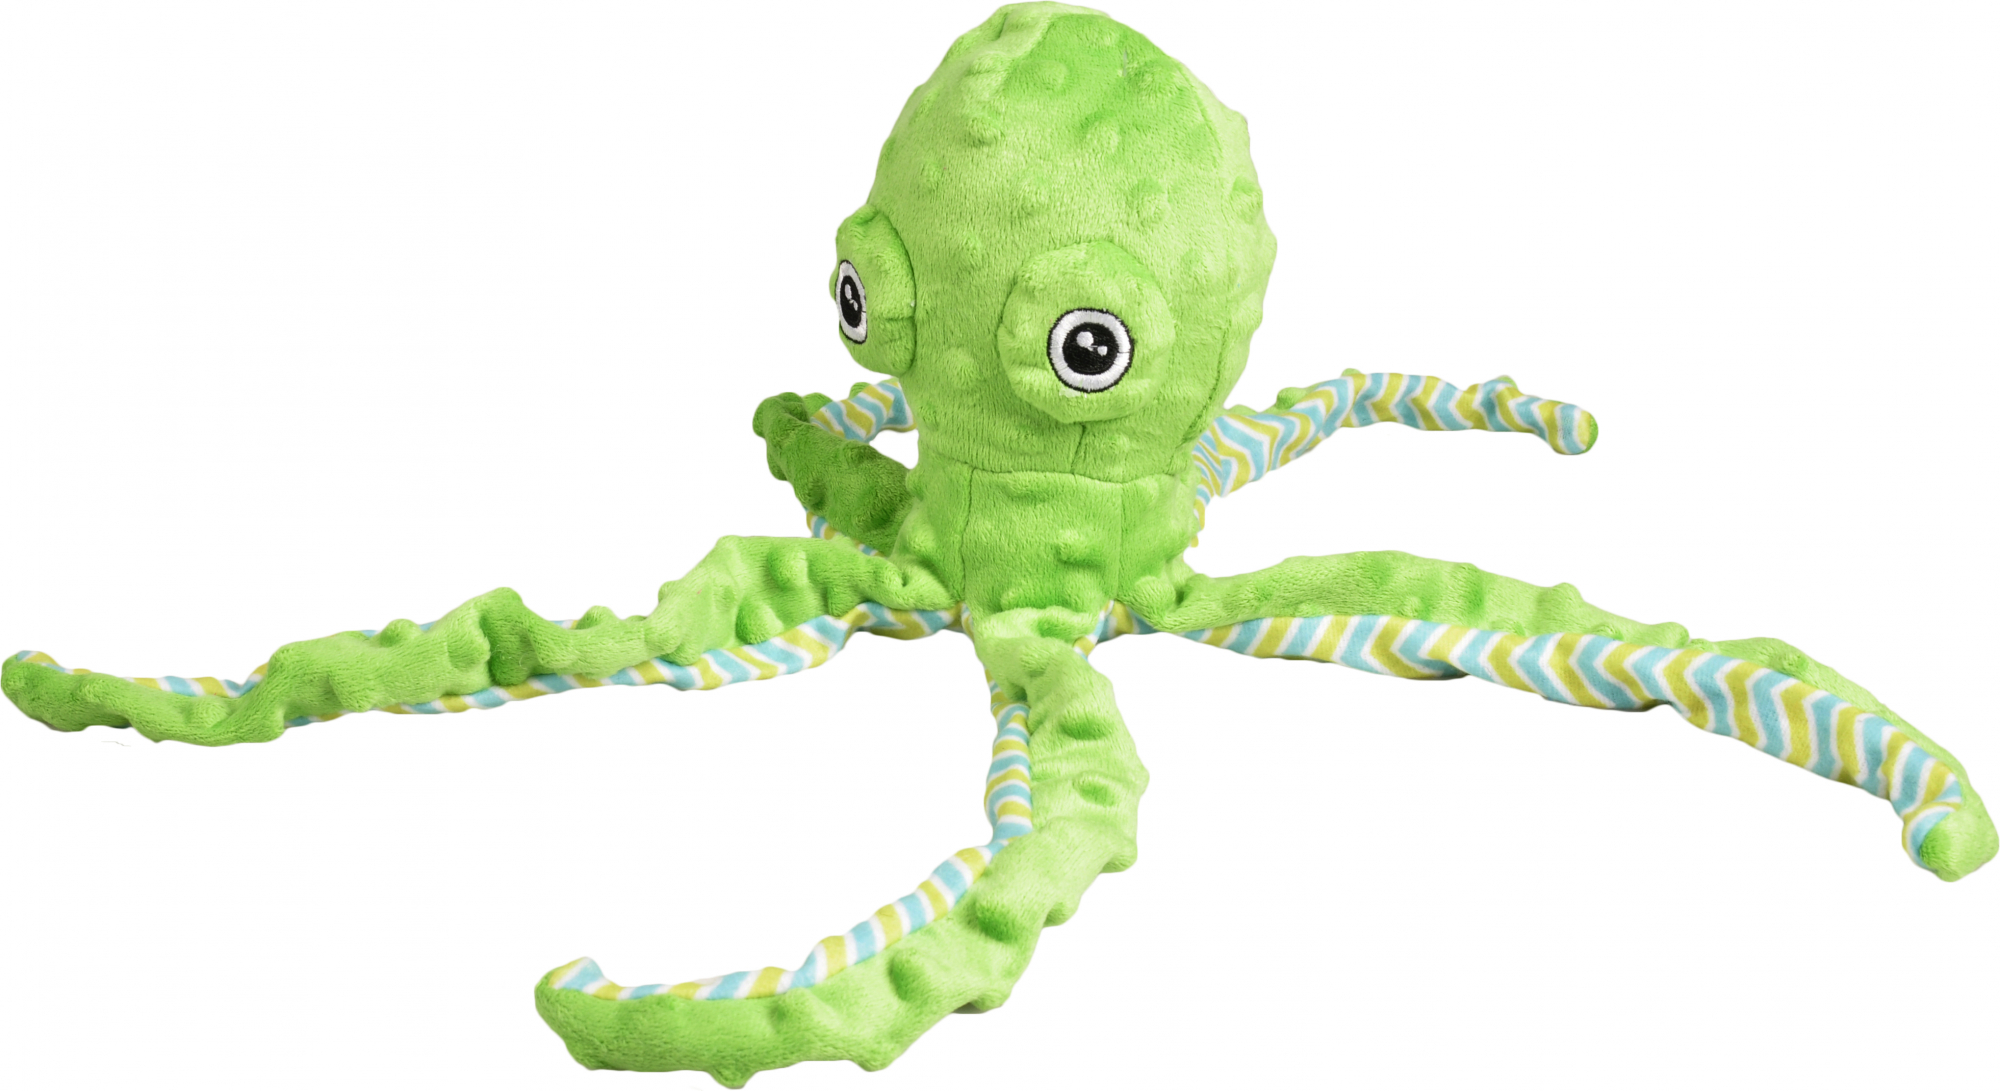 Jouet Peluche Octopus pour chien - plusieurs coloris disponibles - coloris selon arrivage